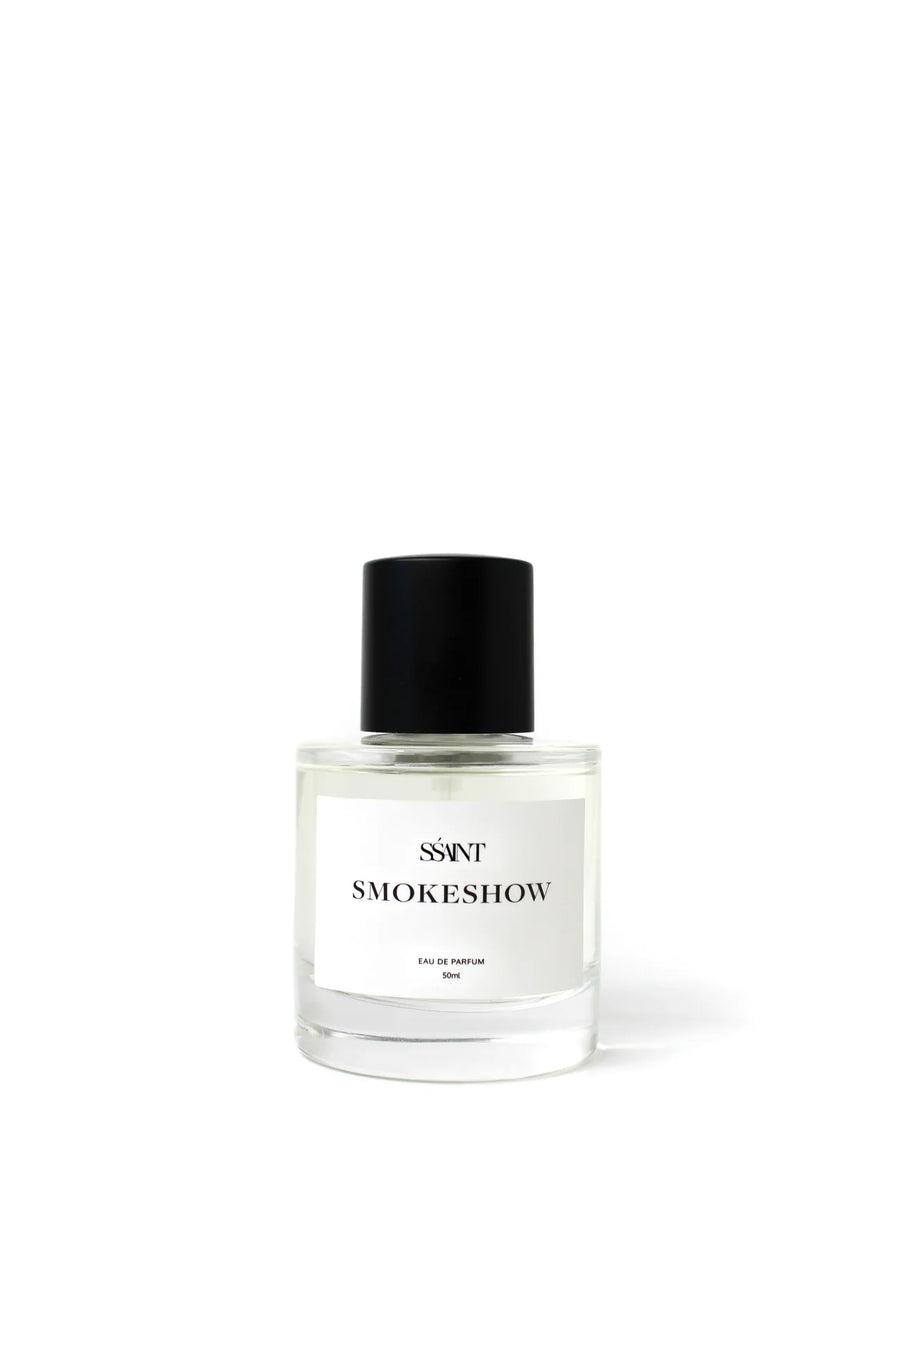 Ssaint Smokeshow Perfume